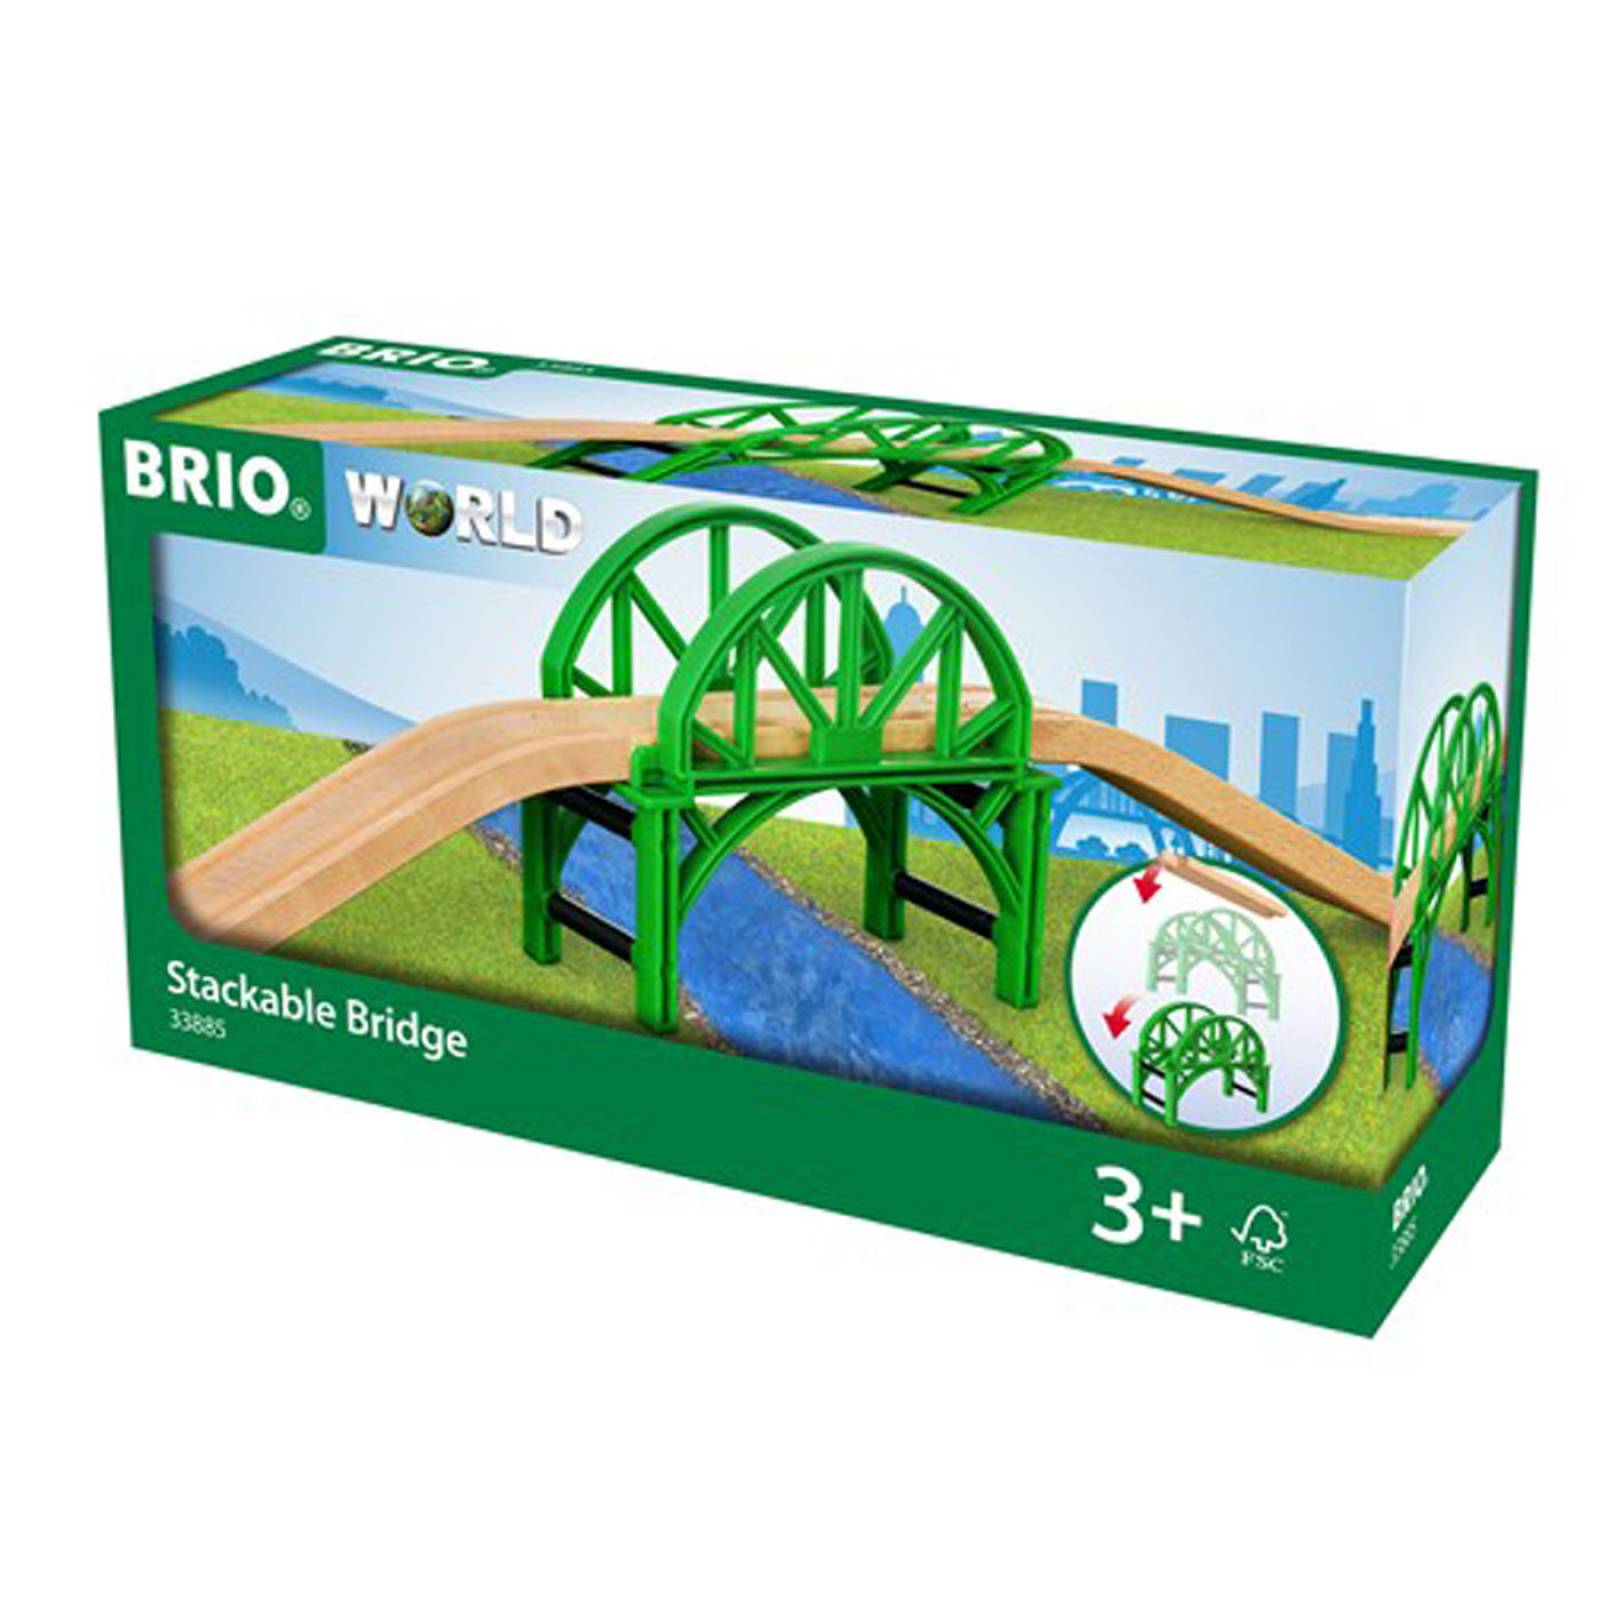 Stackable Bridge BRIO Wooden Railway Age 3+